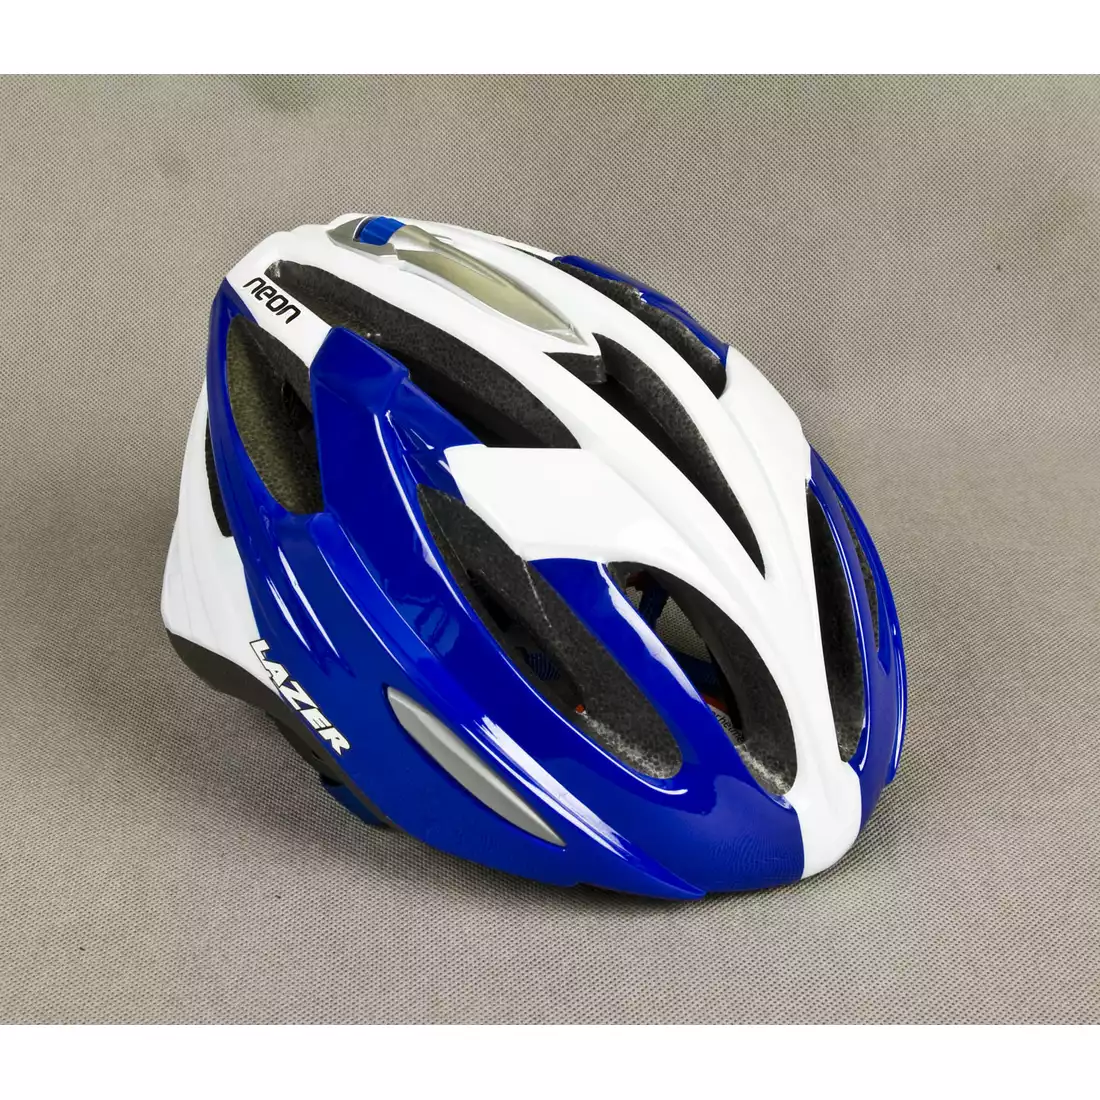 LAZER NEON kask rowerowy niebiesko-biały